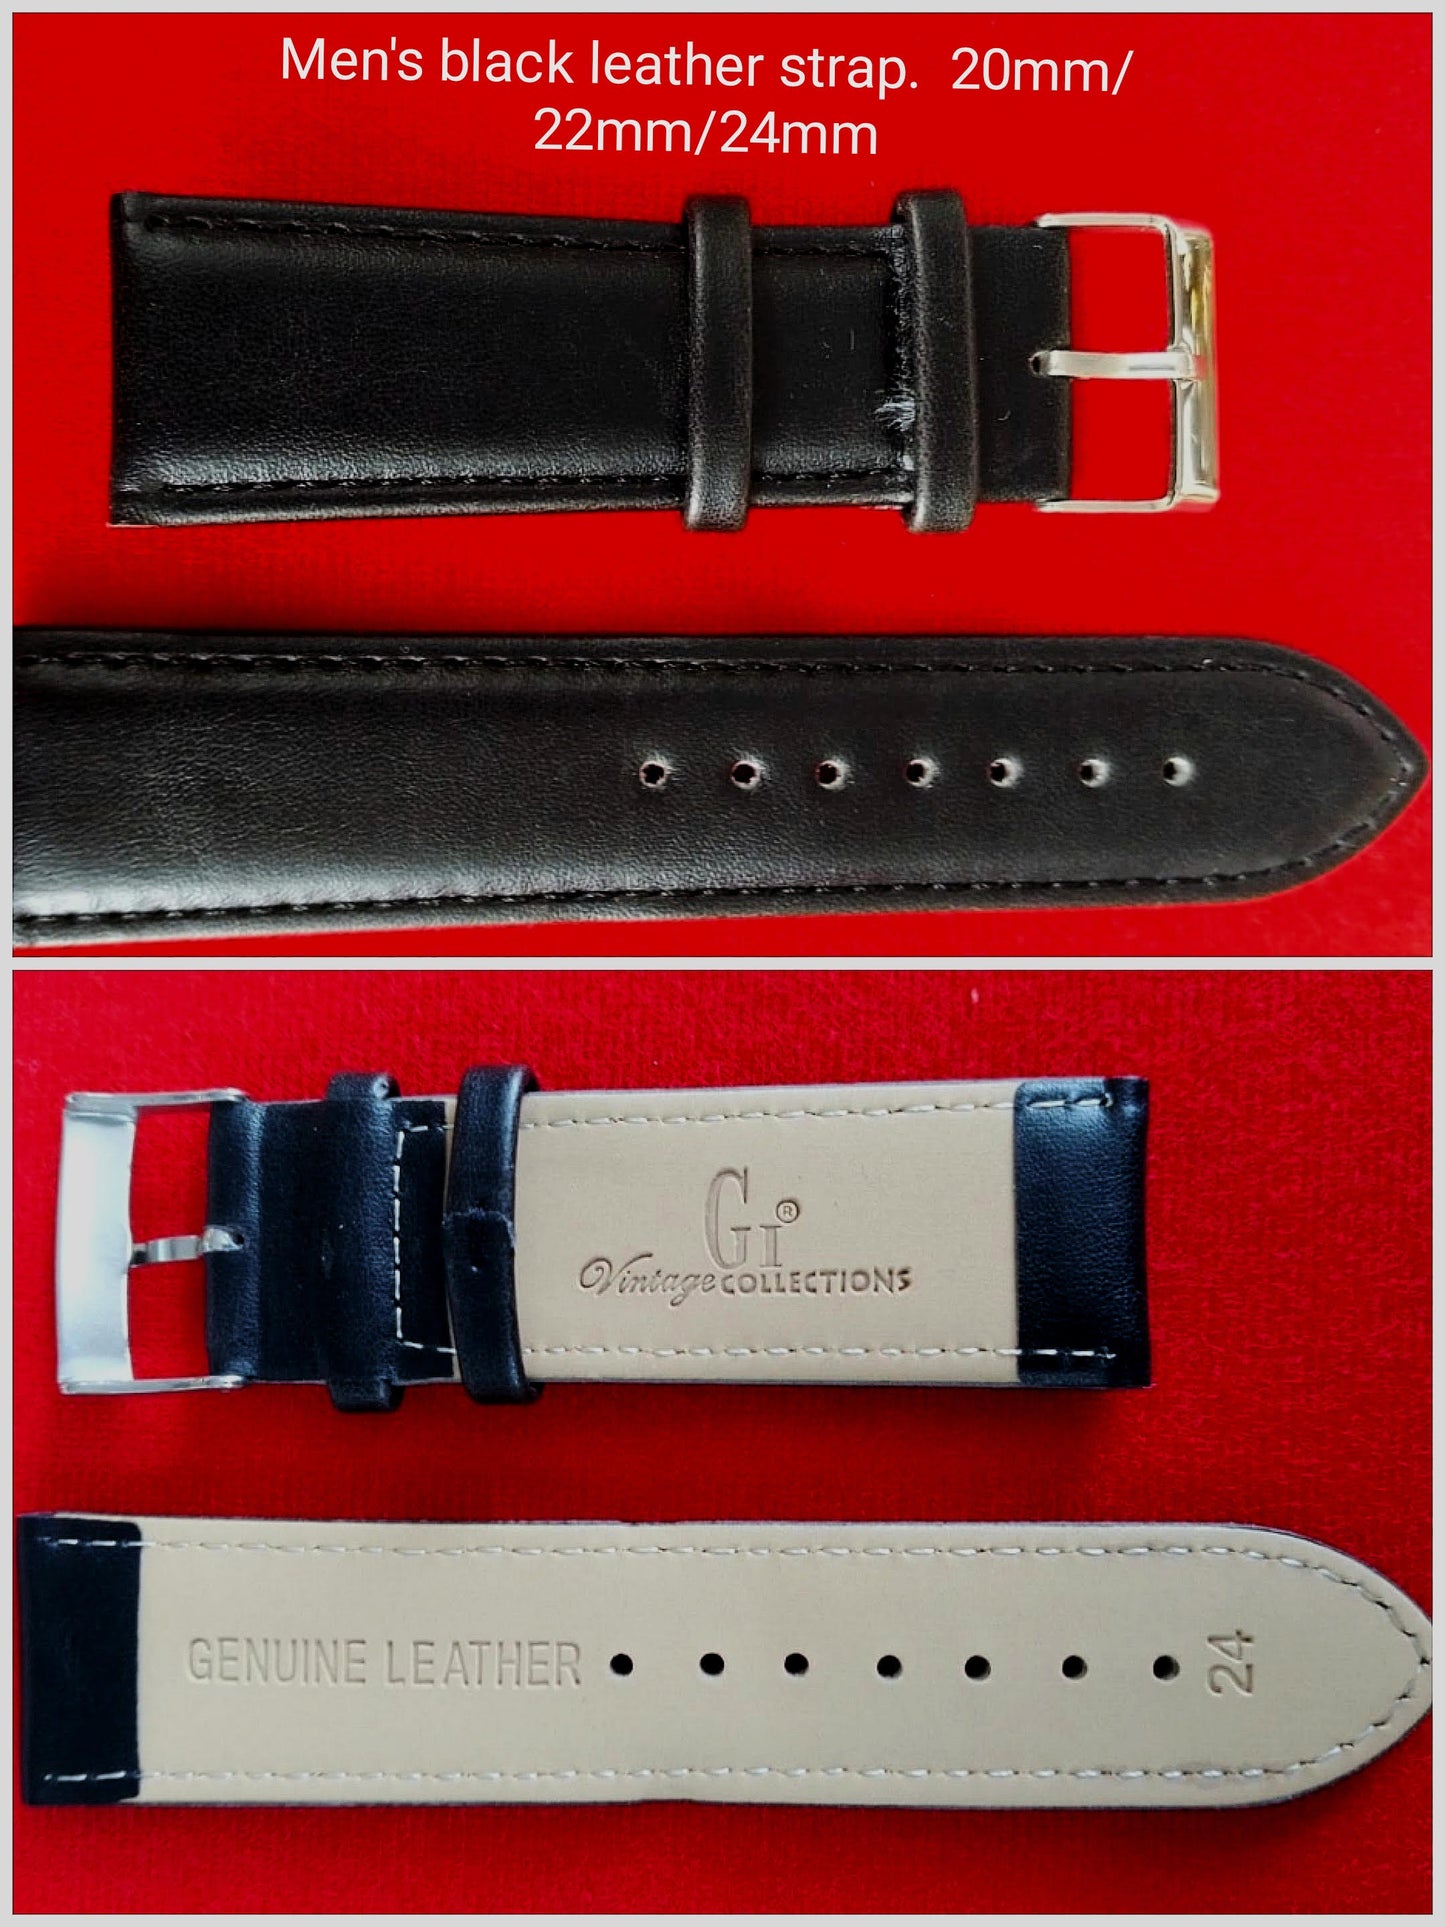 Men's black genuine leather strap 20mm/22mm/24mm